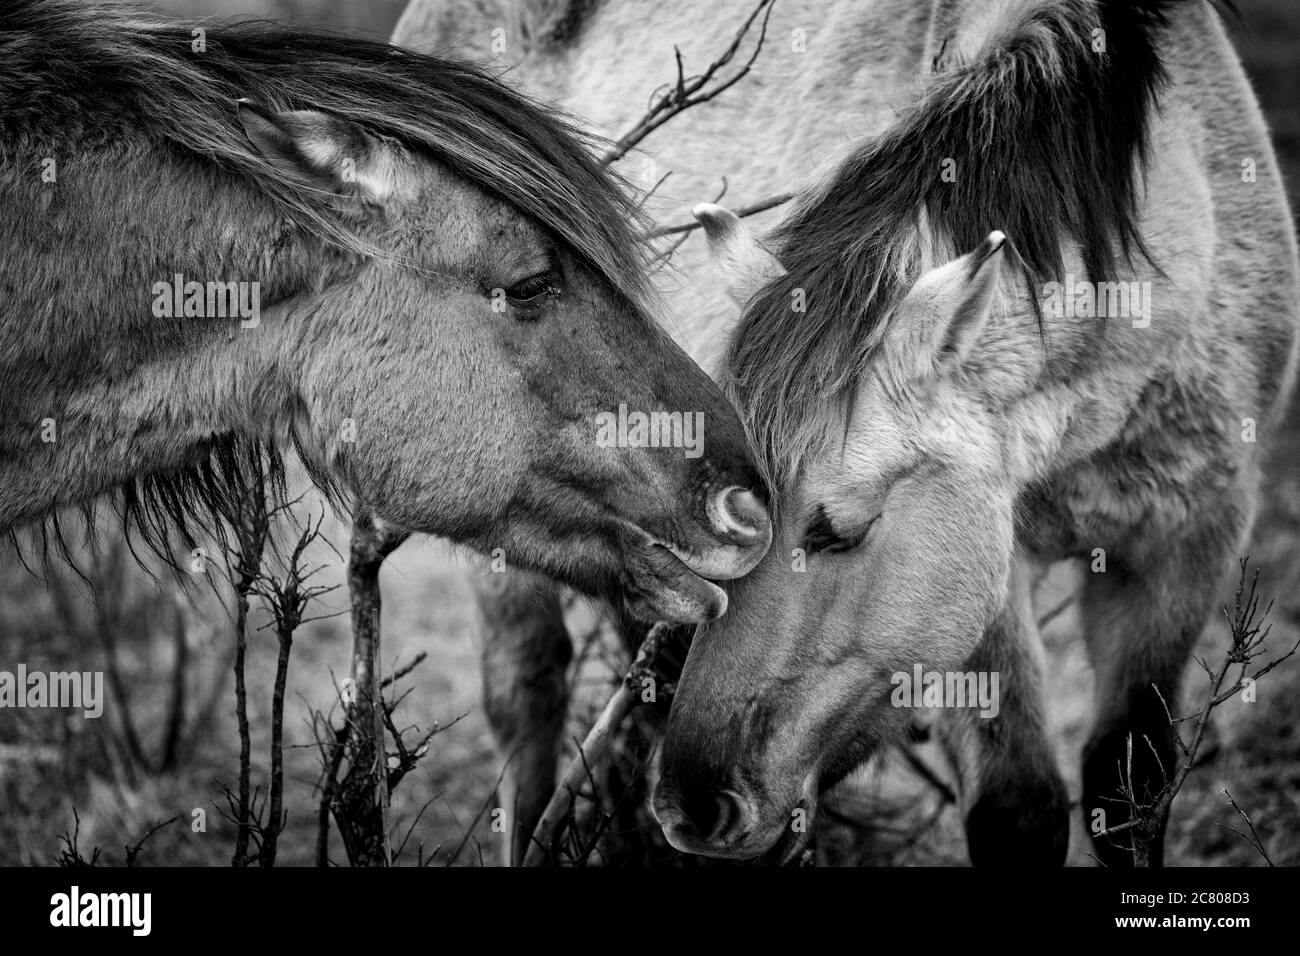 Cheval remilage Konik nature sauvage animaux faune Kiev Ukraine mammifère équine Banque D'Images